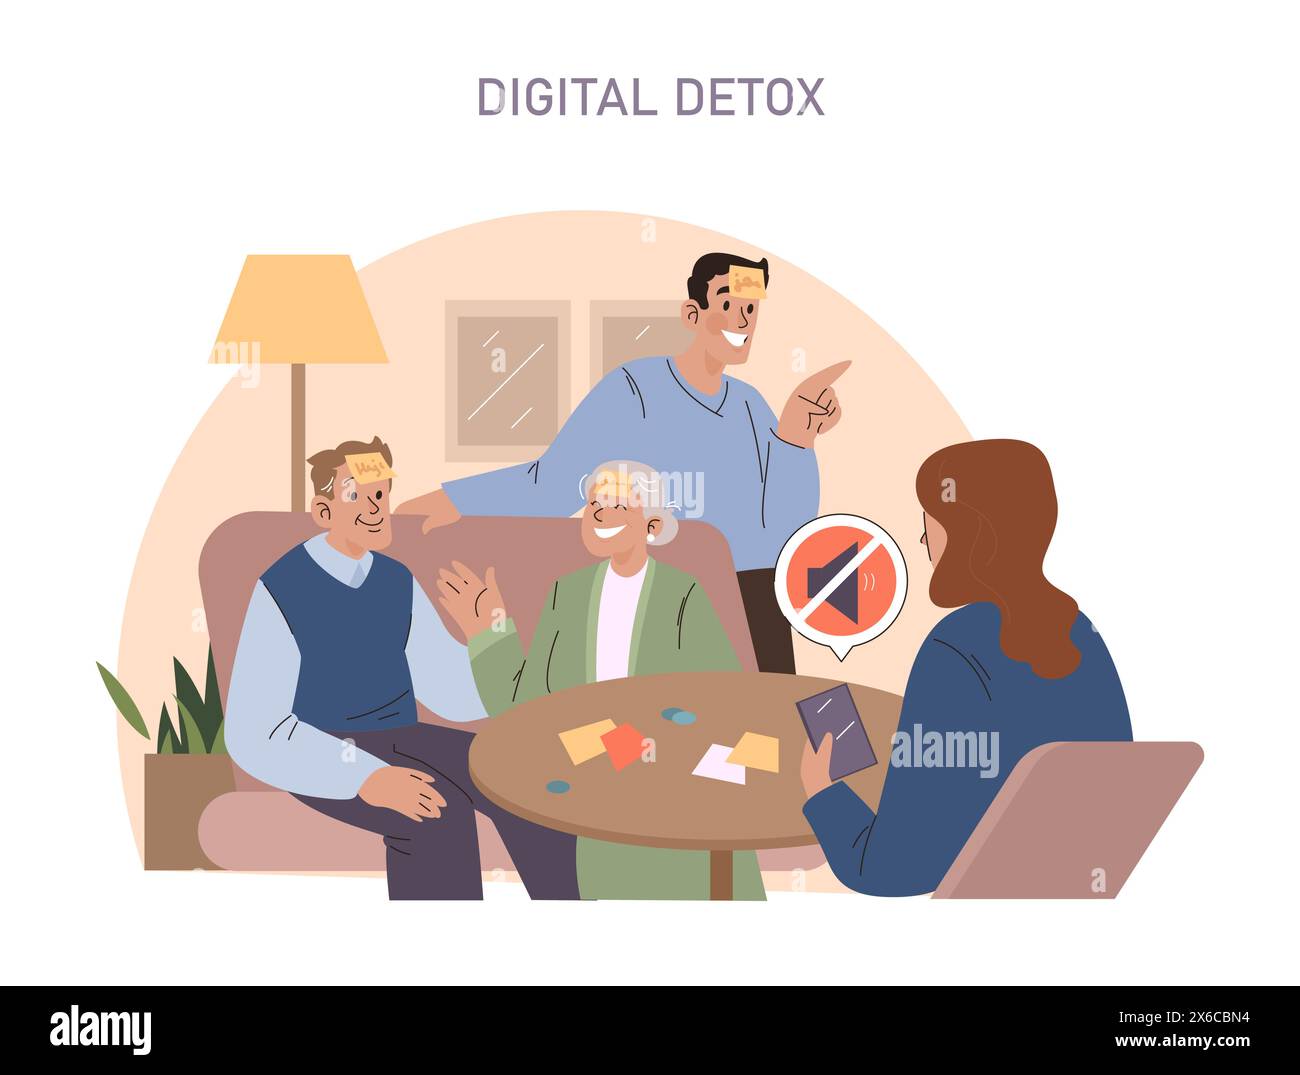 Digitales Detox-Konzept. Familie, die sich an Brettspielen beteiligt und sich in technologiefreier Freizeit engagiert. Intergenerationelles Spiel und Verbindung in Innenräumen. Stock Vektor